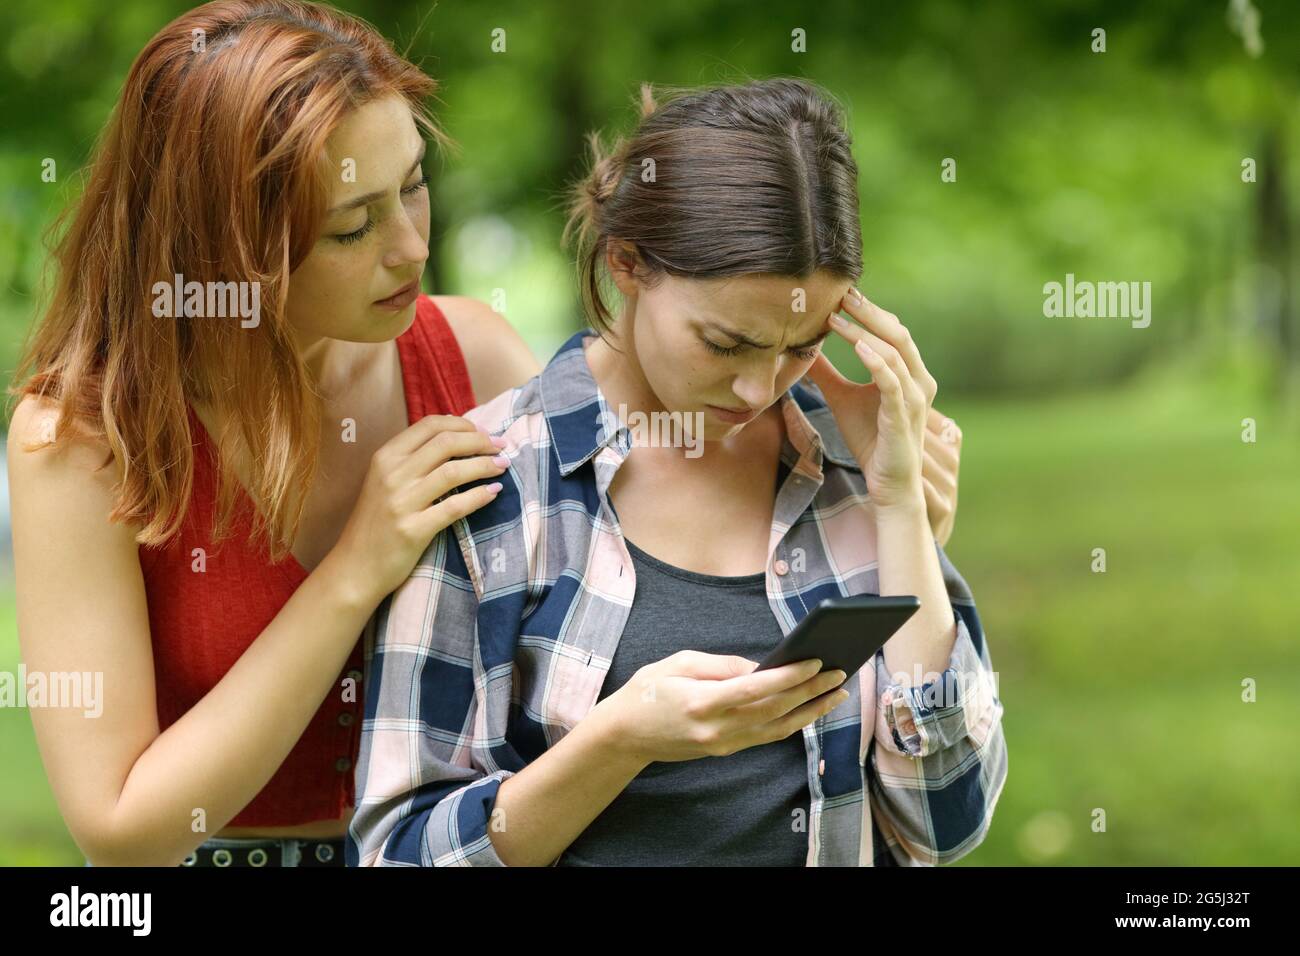 Ein trauriger Student, der auf dem Smartphone nachgeht und von einem Freund in einem Park oder auf dem Campus getröstet wird Stockfoto